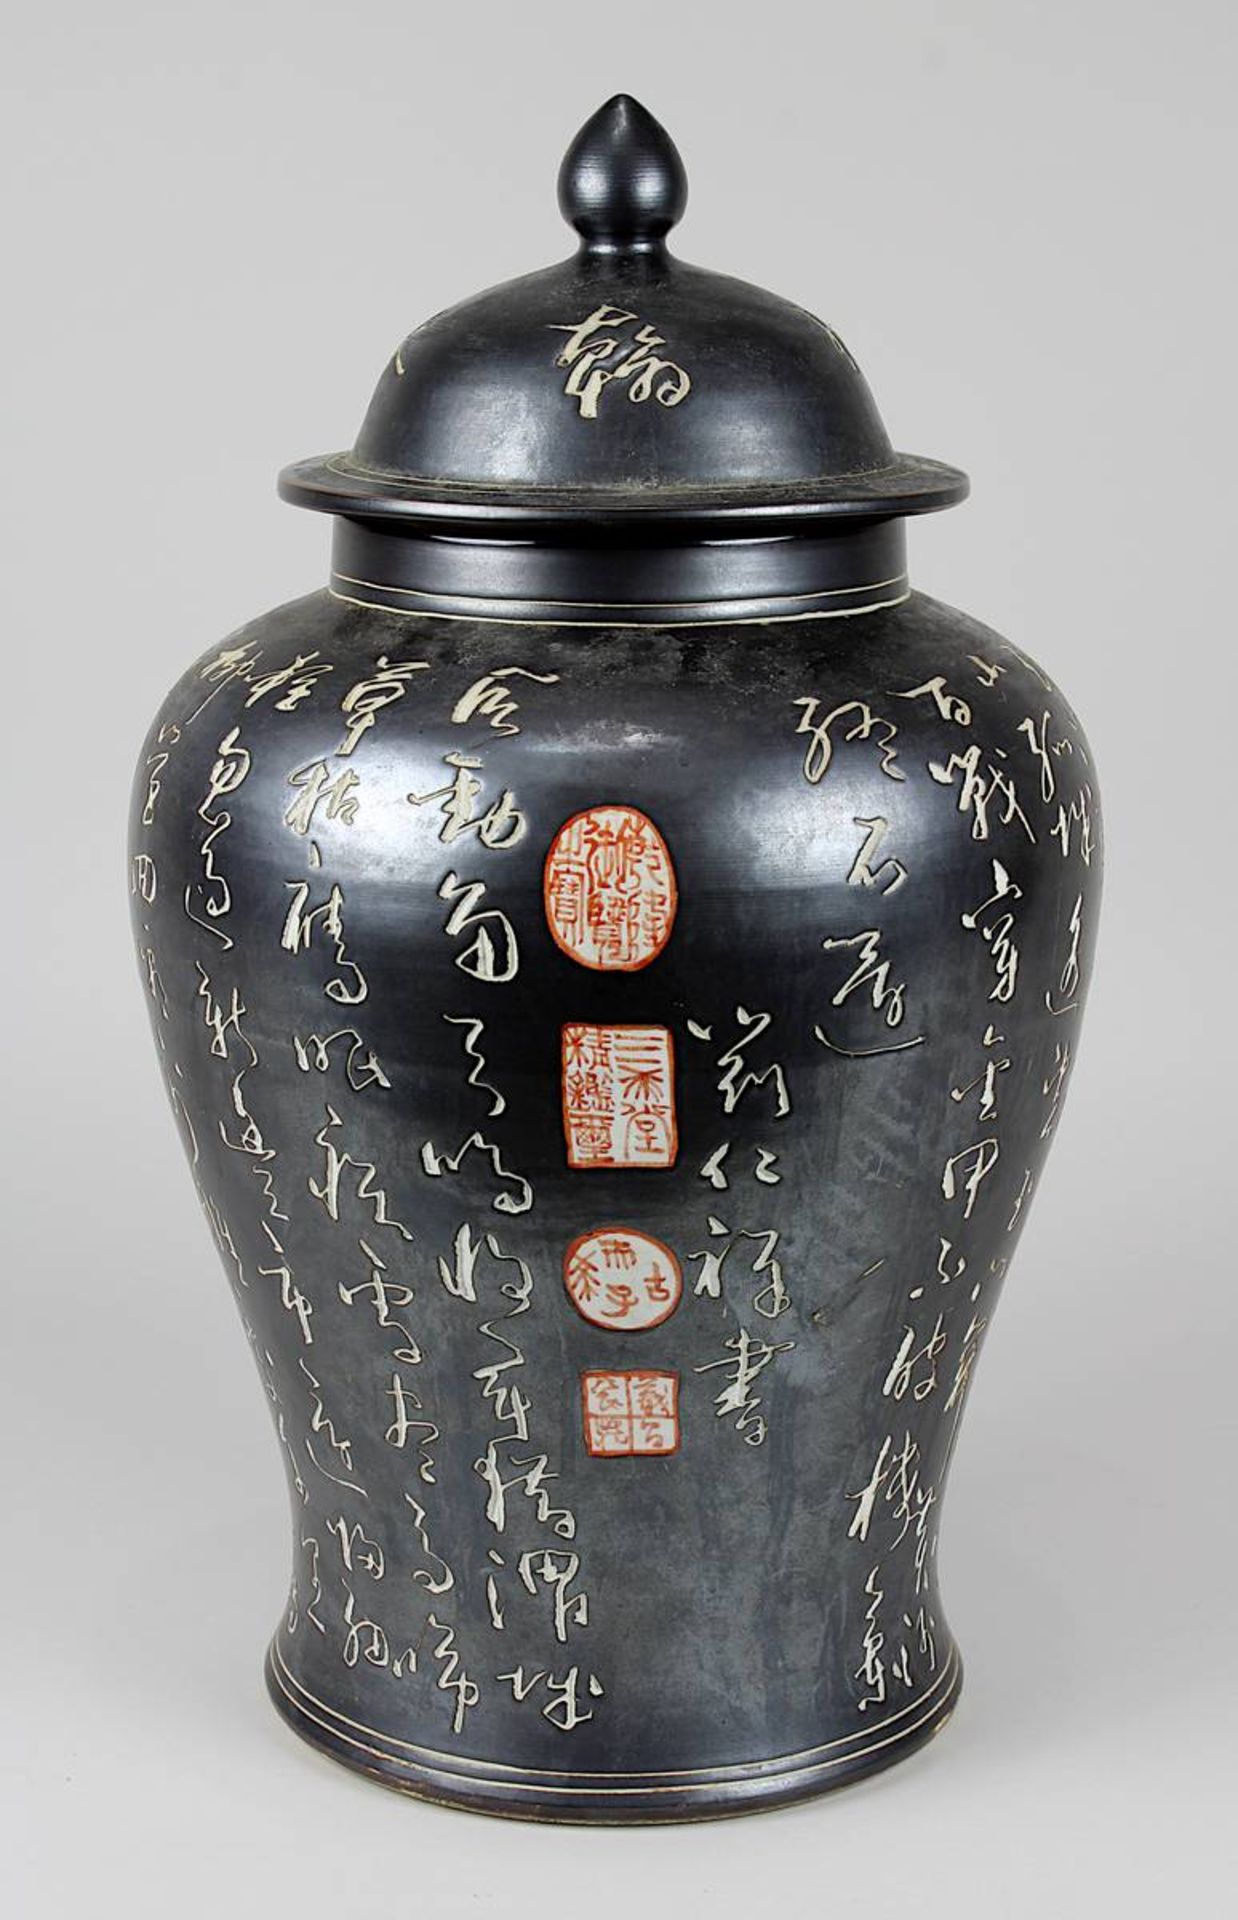 Chinesische Deckelvase mit Schriftzeichen, China 19. Jh., Porzellan, weißer Scherben, gedrehter